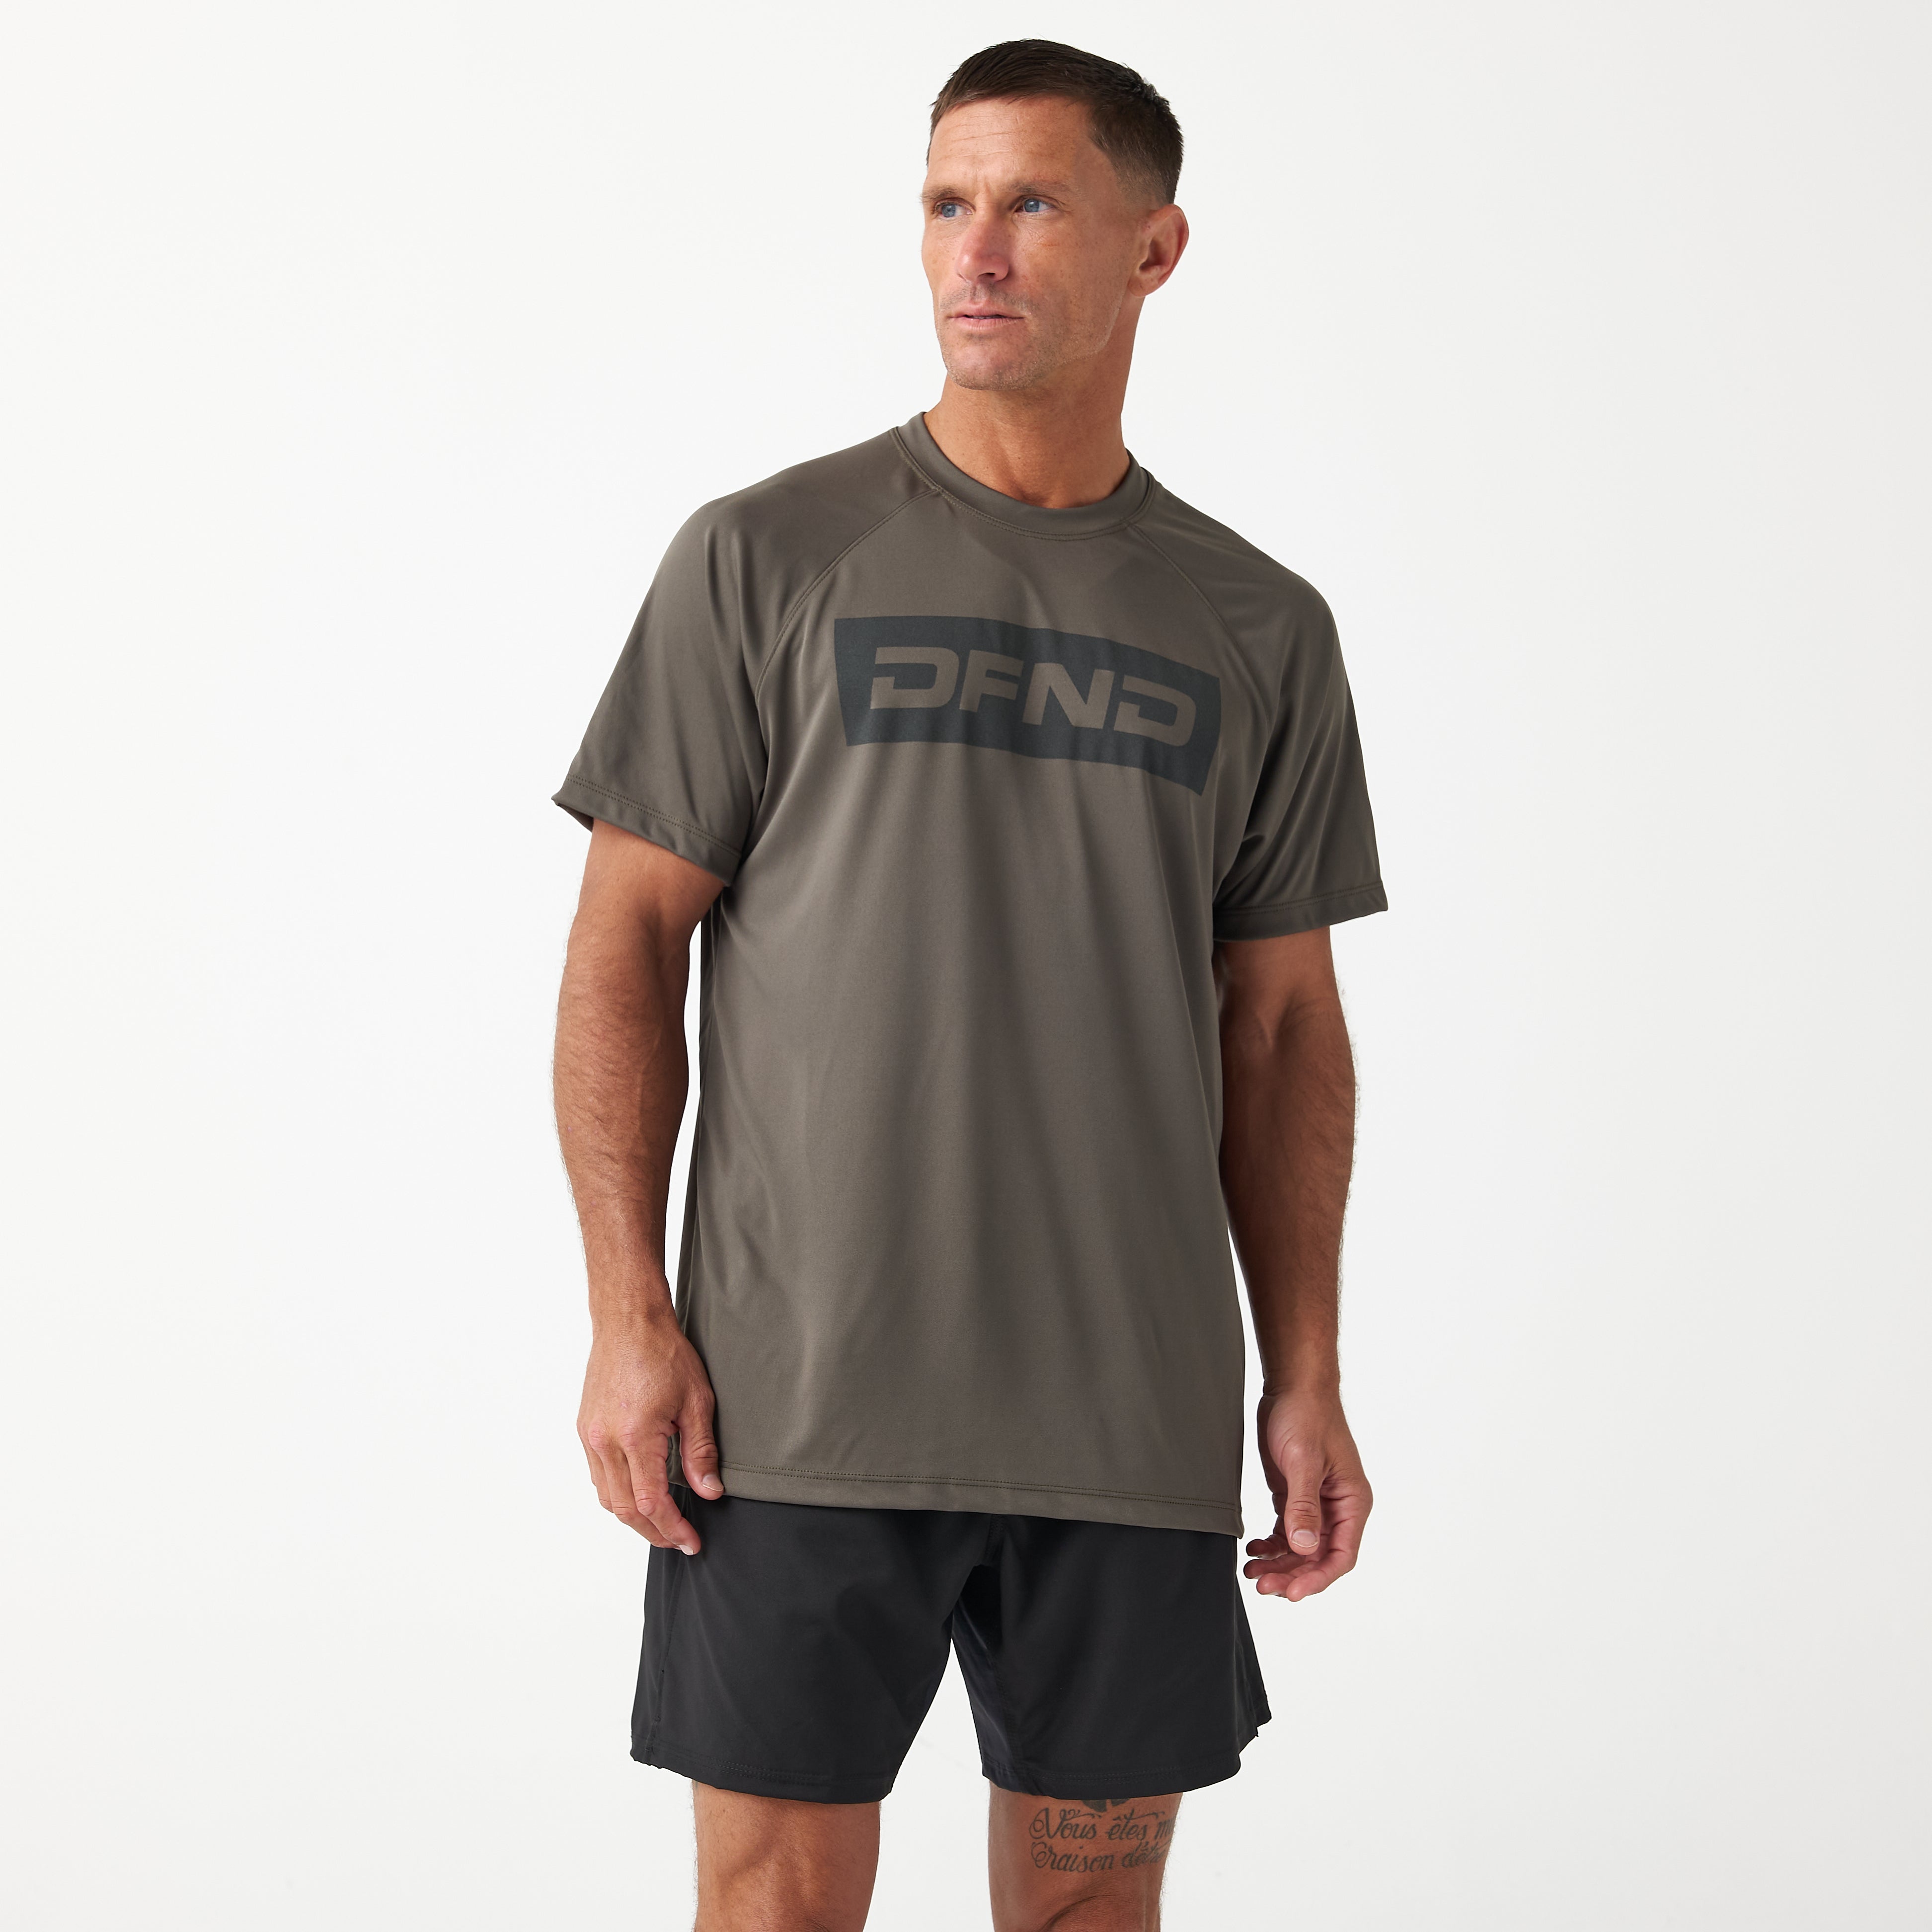 Men's Short Sleeve Wedge Workout Shirt – DFND